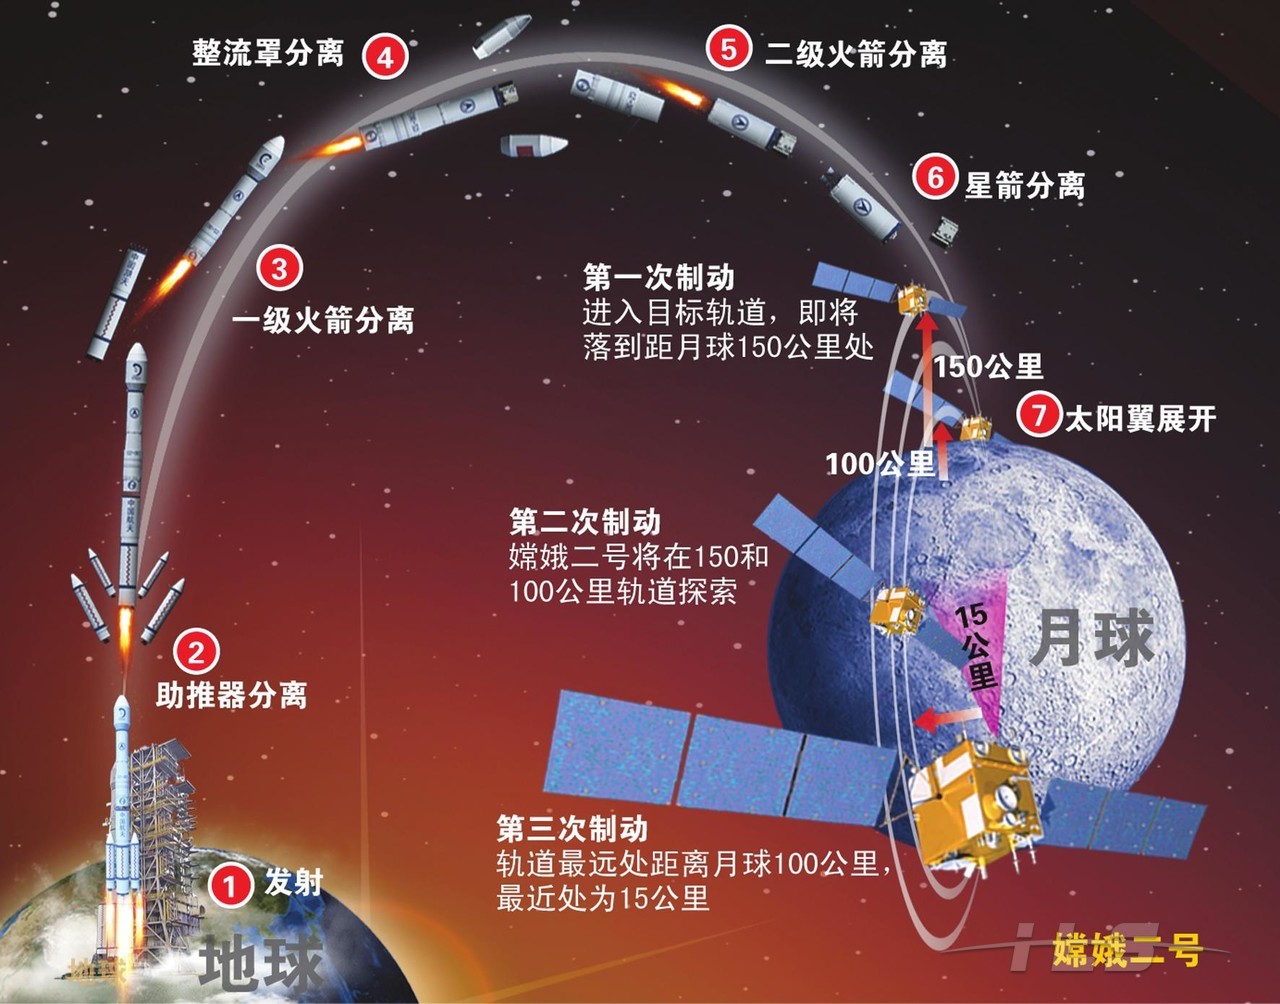 一号变轨示意图嫦娥一号嫦娥一号发射升空嫦娥一号演练中国探月clep